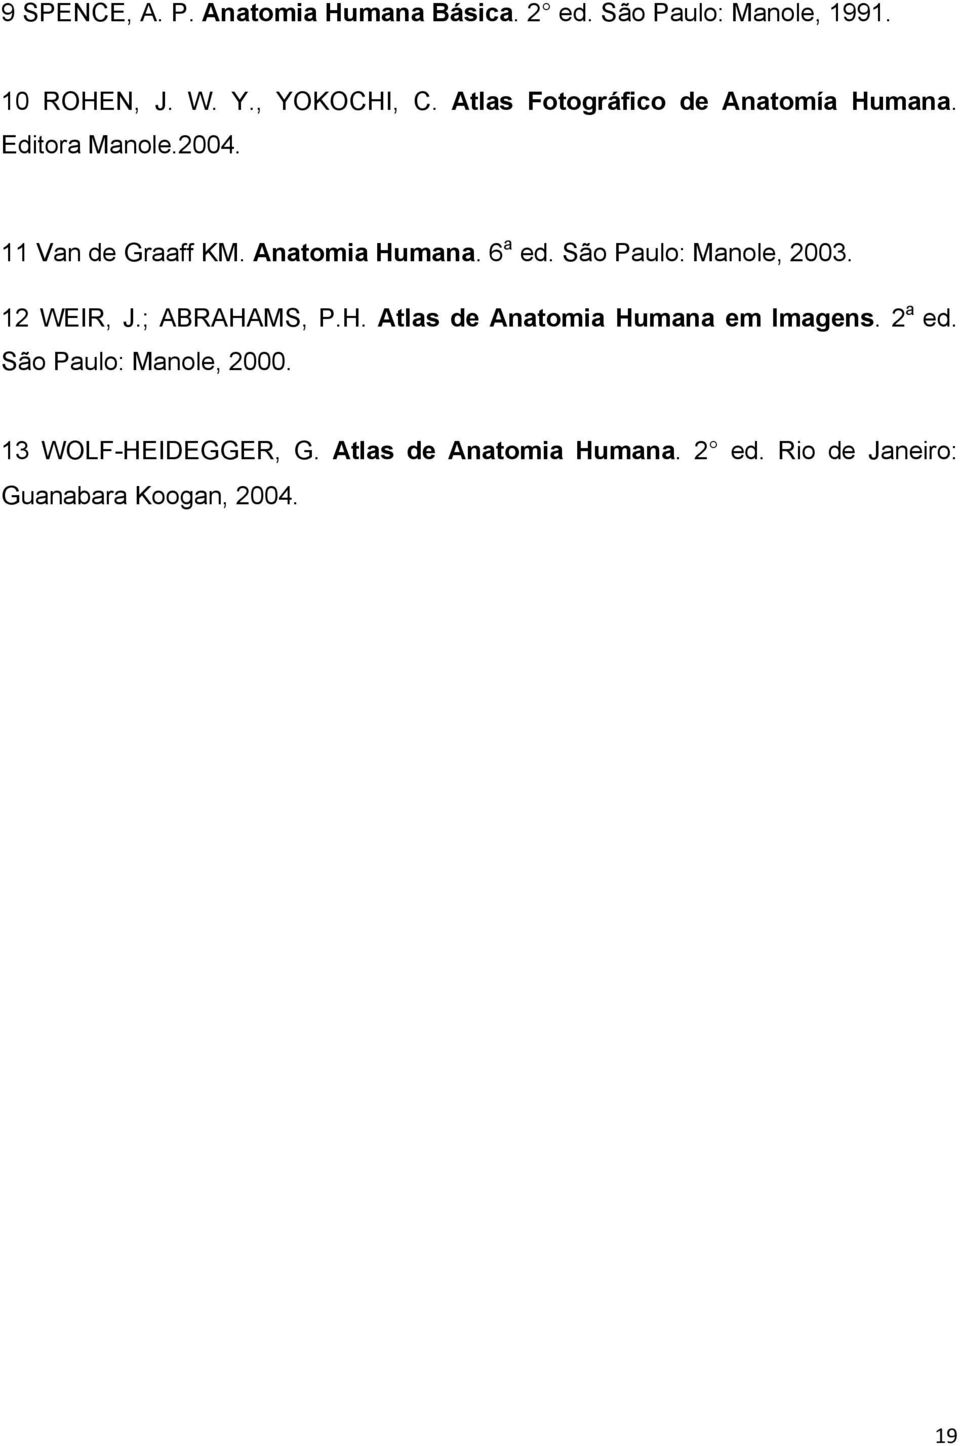 São Paulo: Manole, 2003. 12 WEIR, J.; ABRAHAMS, P.H. Atlas de Anatomia Humana em Imagens. 2 a ed.